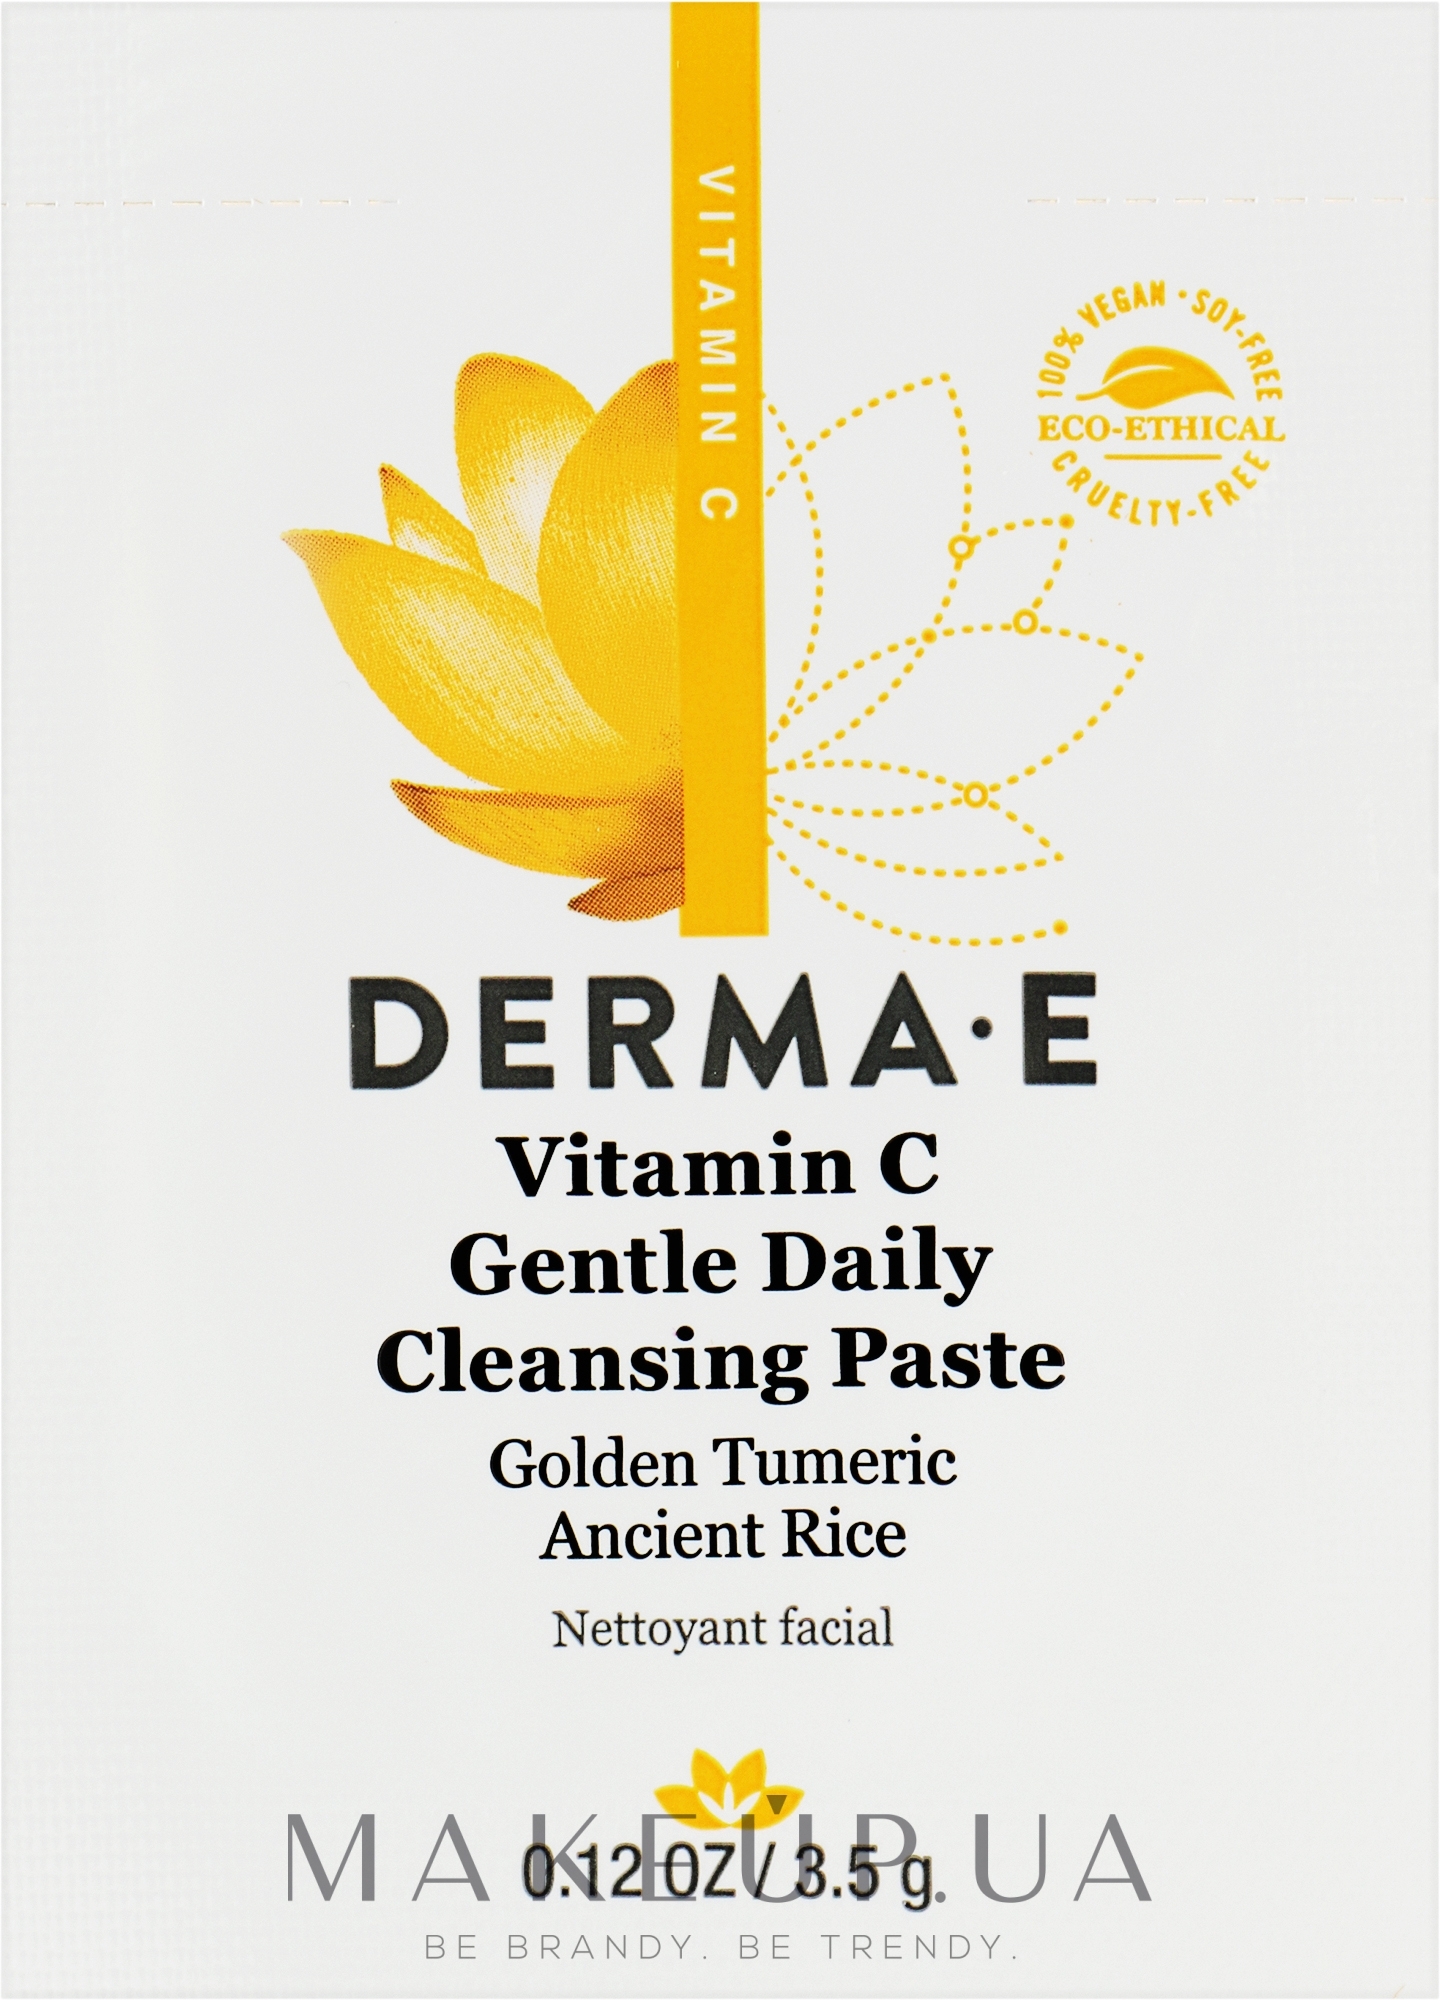 Ніжна освітлювальна щоденна паста 2в1 з вітаміном С - Derma E Vitamin C Gentle Daily Cleansing Paste (пробник) — фото 3.5g